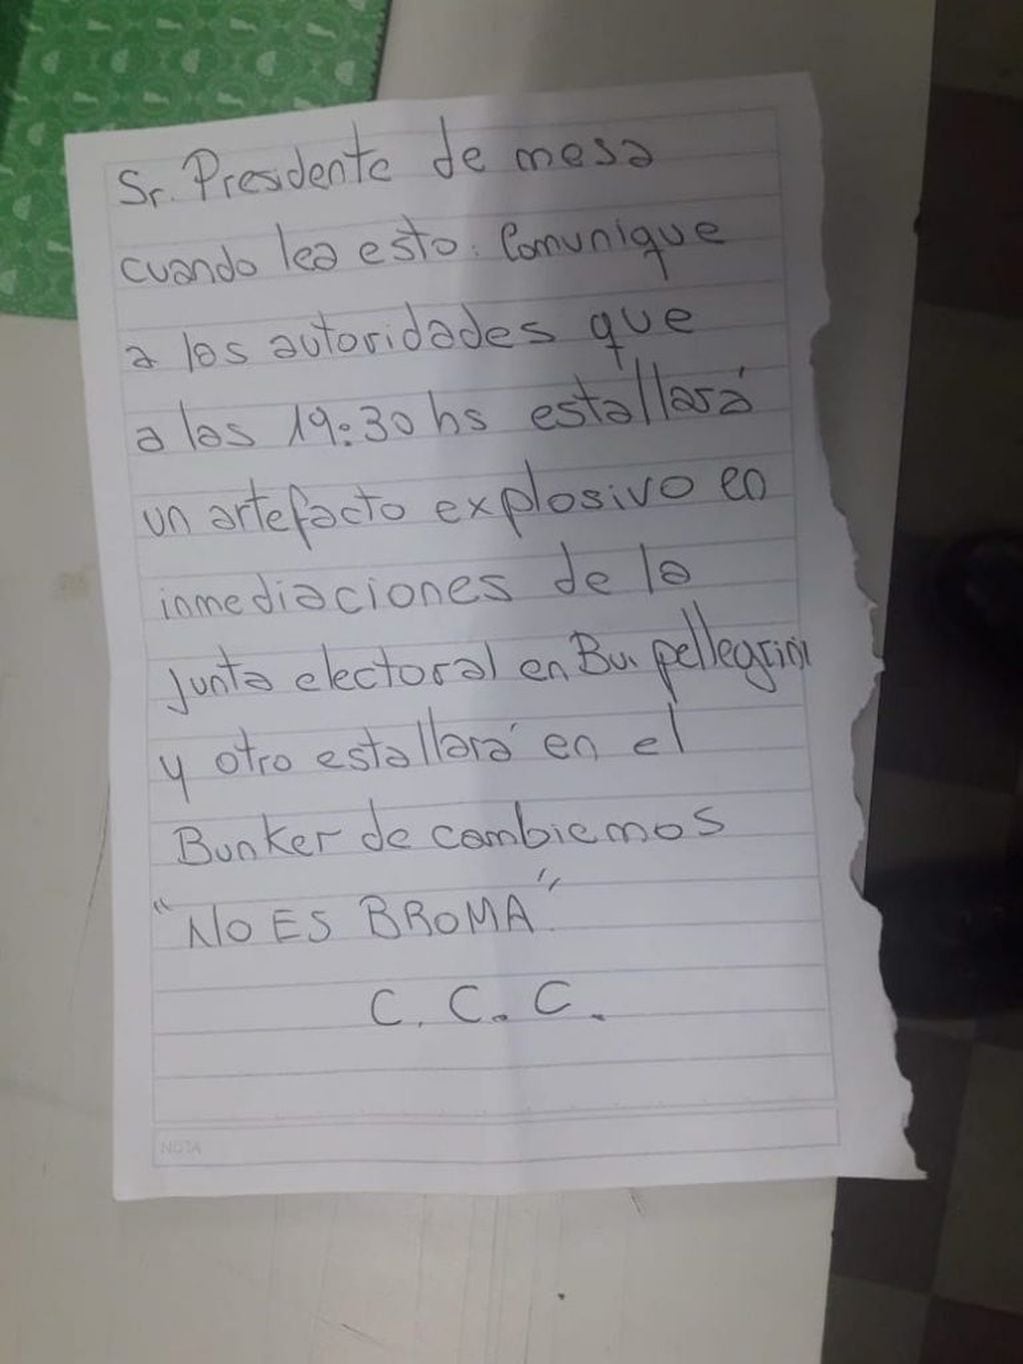 La amenaza de bomba sobre el búnker de Cambiemos y la Junta Electoral fue comunicada a través de un texto manuscrito. (@gmalfaro)